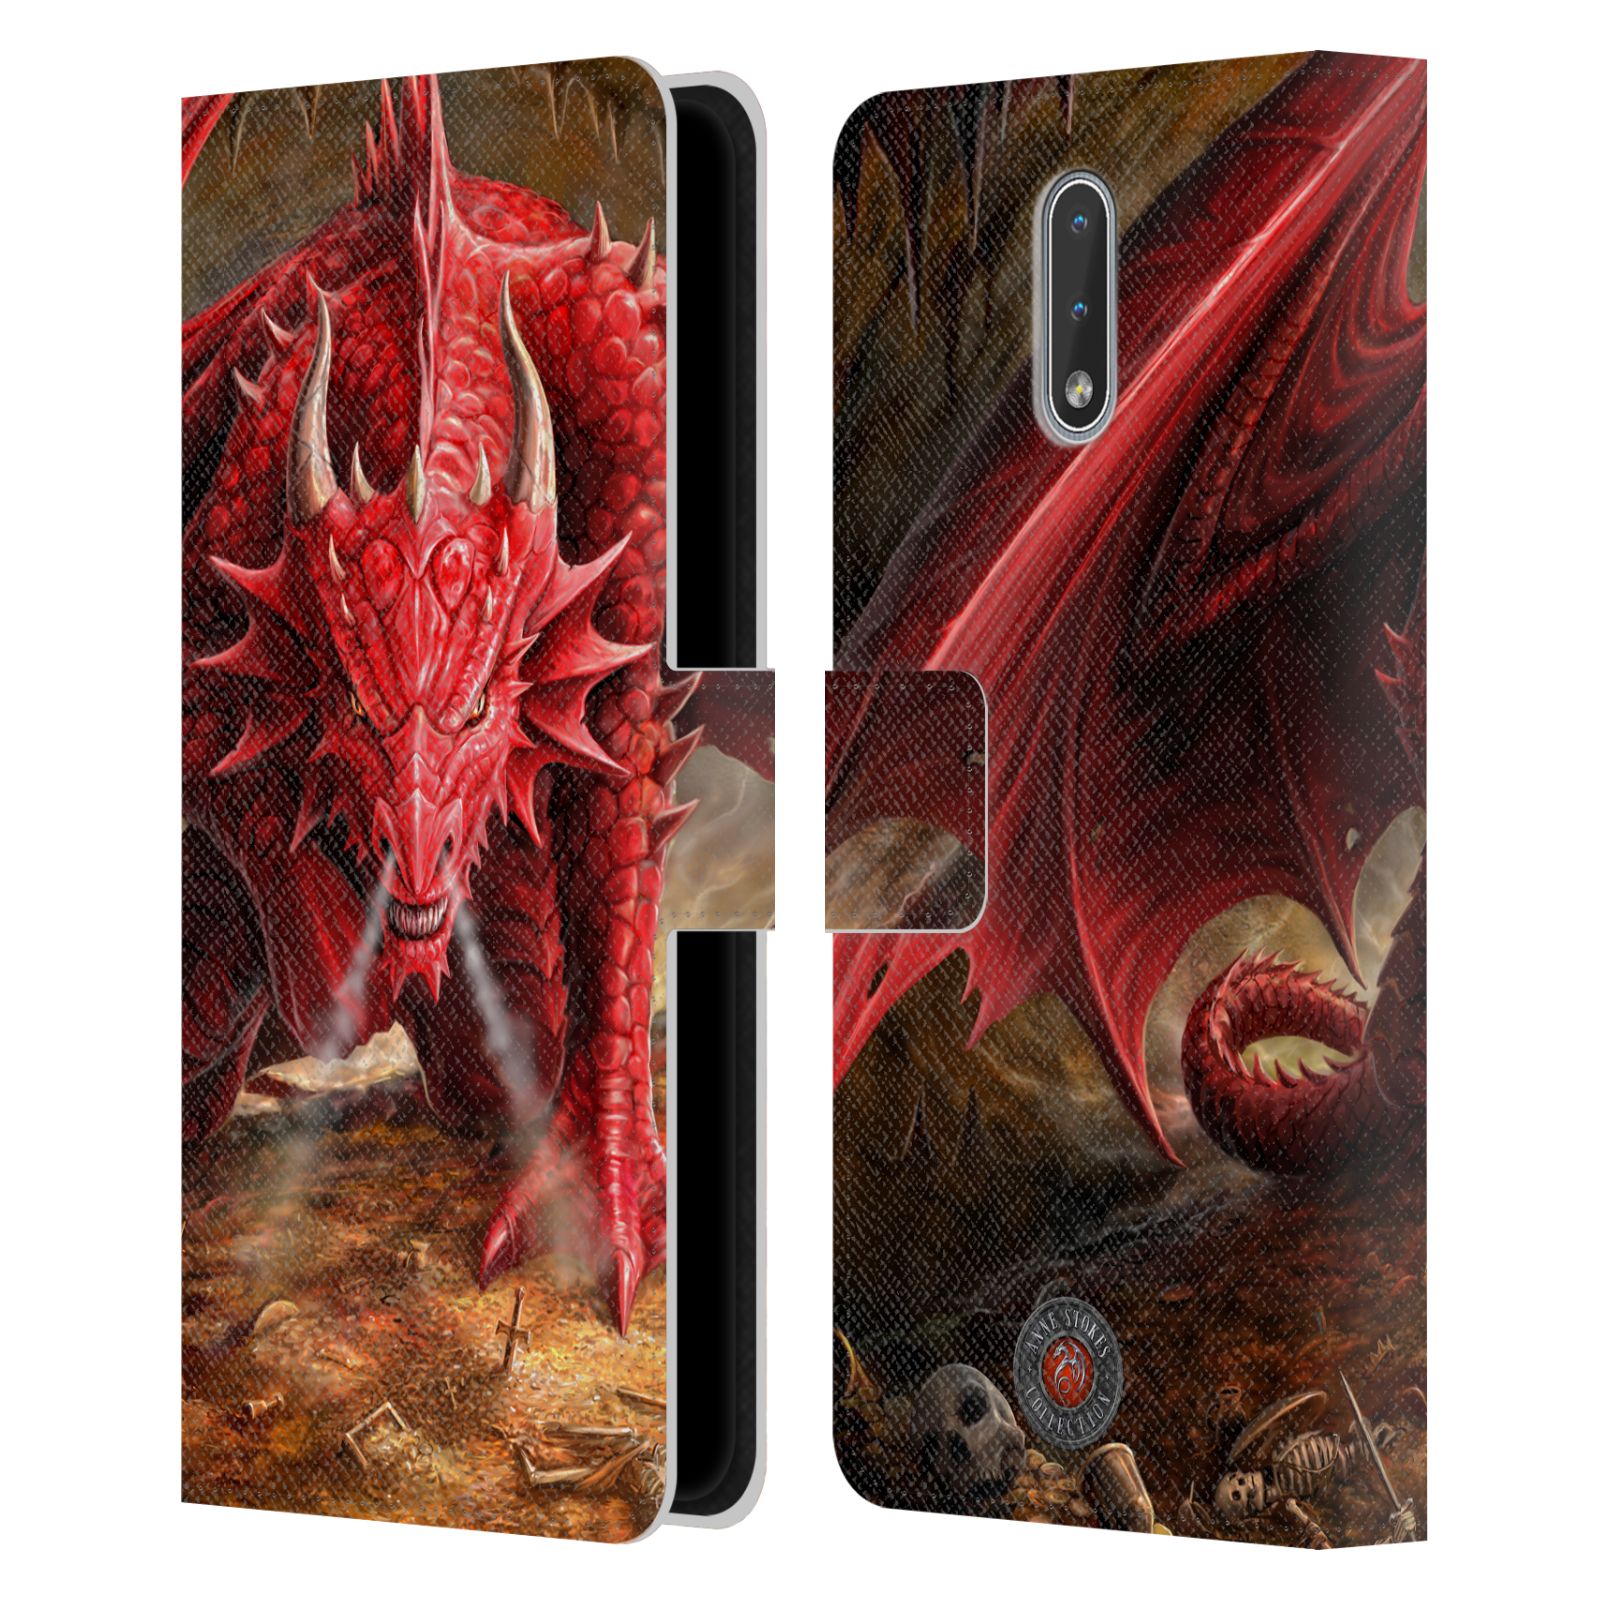 Pouzdro HEAD CASE na mobil Nokia 2.3  fantasy - červený drak